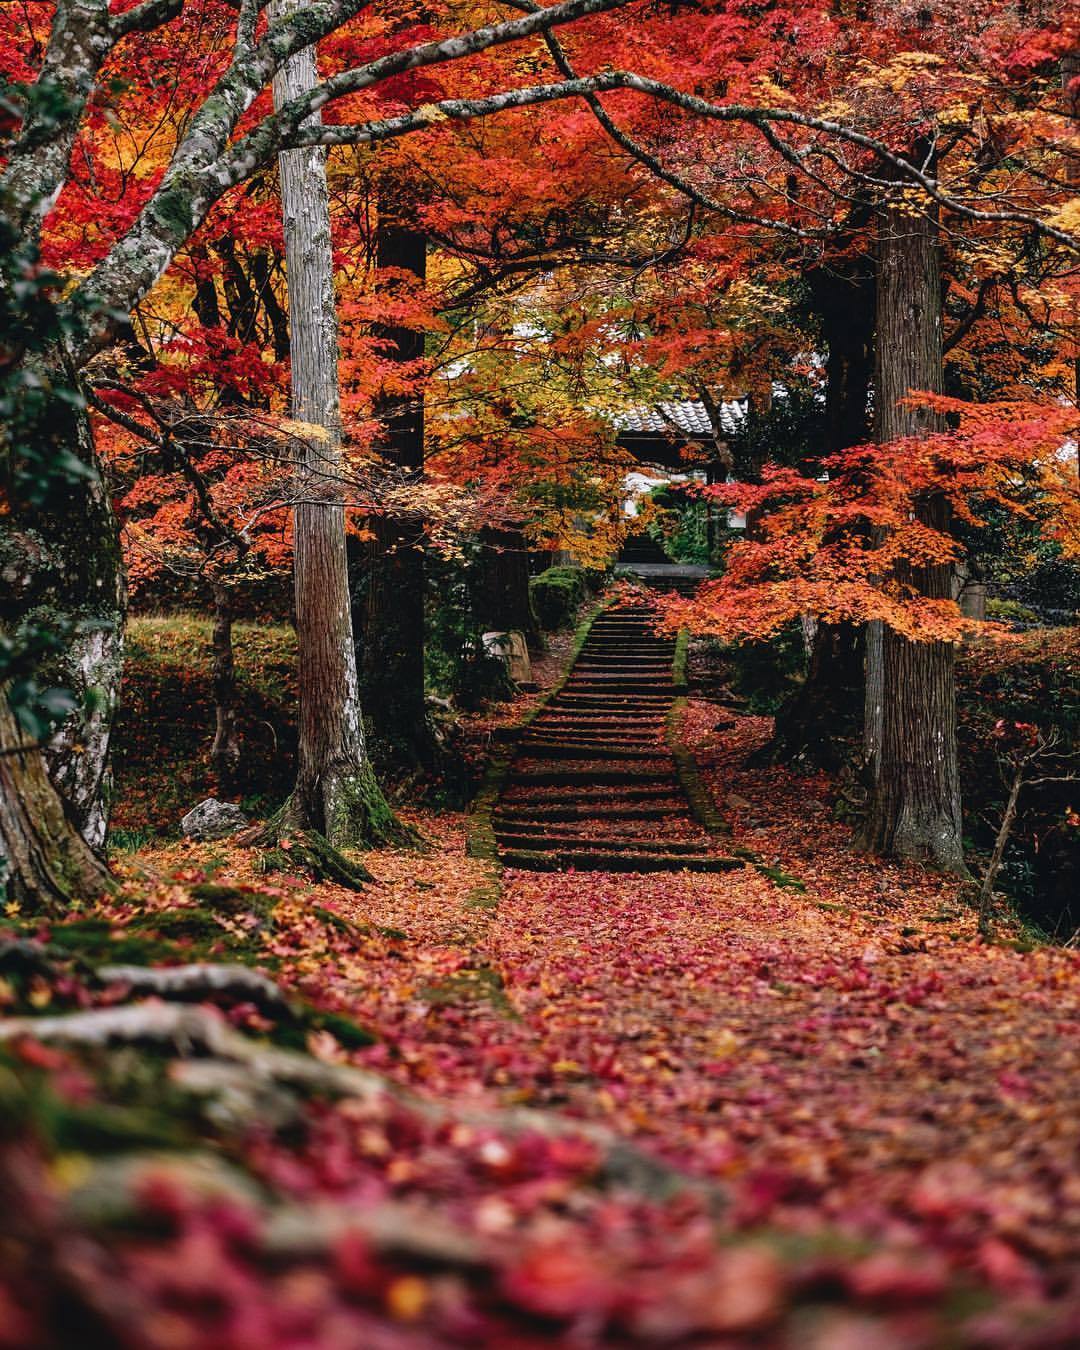 yas-hit:
â é¾ç©å¯ºãç´èã®åéã
A red approach to ryoon-ji.
#autumn2017
ð #Ryoonji #Kyoto
ð¸ #FUJIFILM #XT1 (åä¸¹å¸åé¨çº)
â